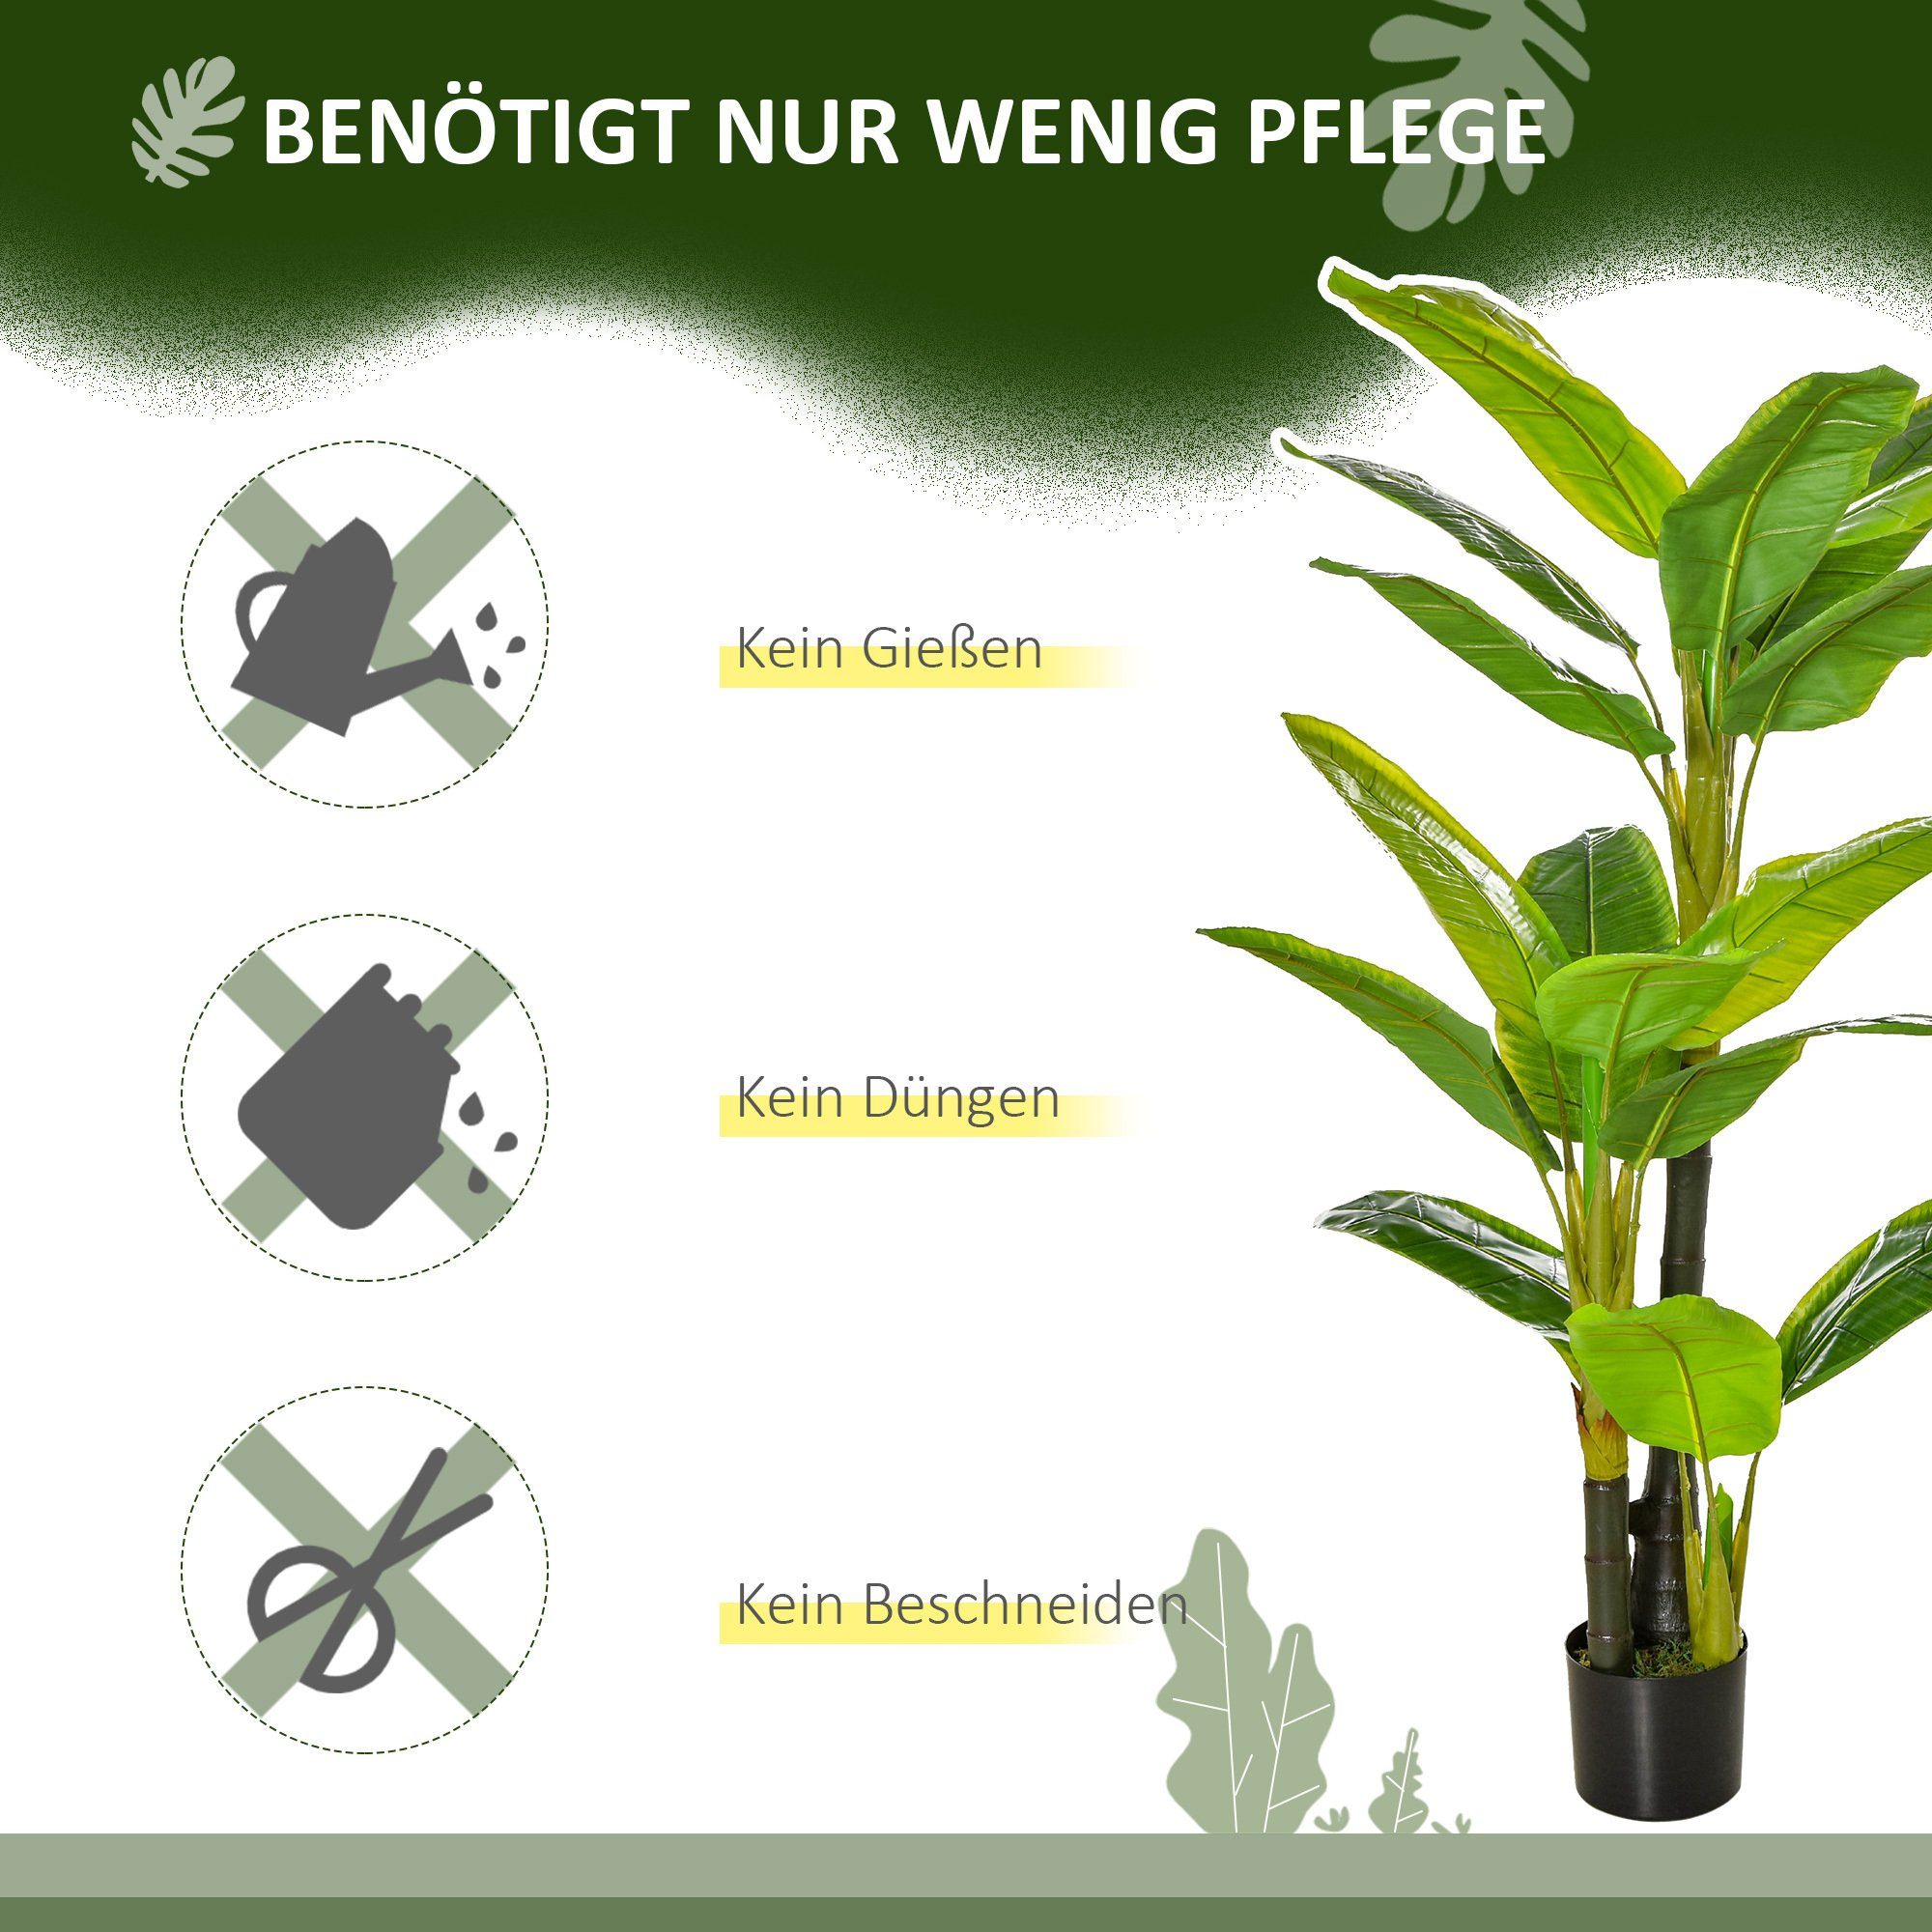 Kunstpflanze künstliche Pflanze mit Bananenbaum Design, HOMCOM